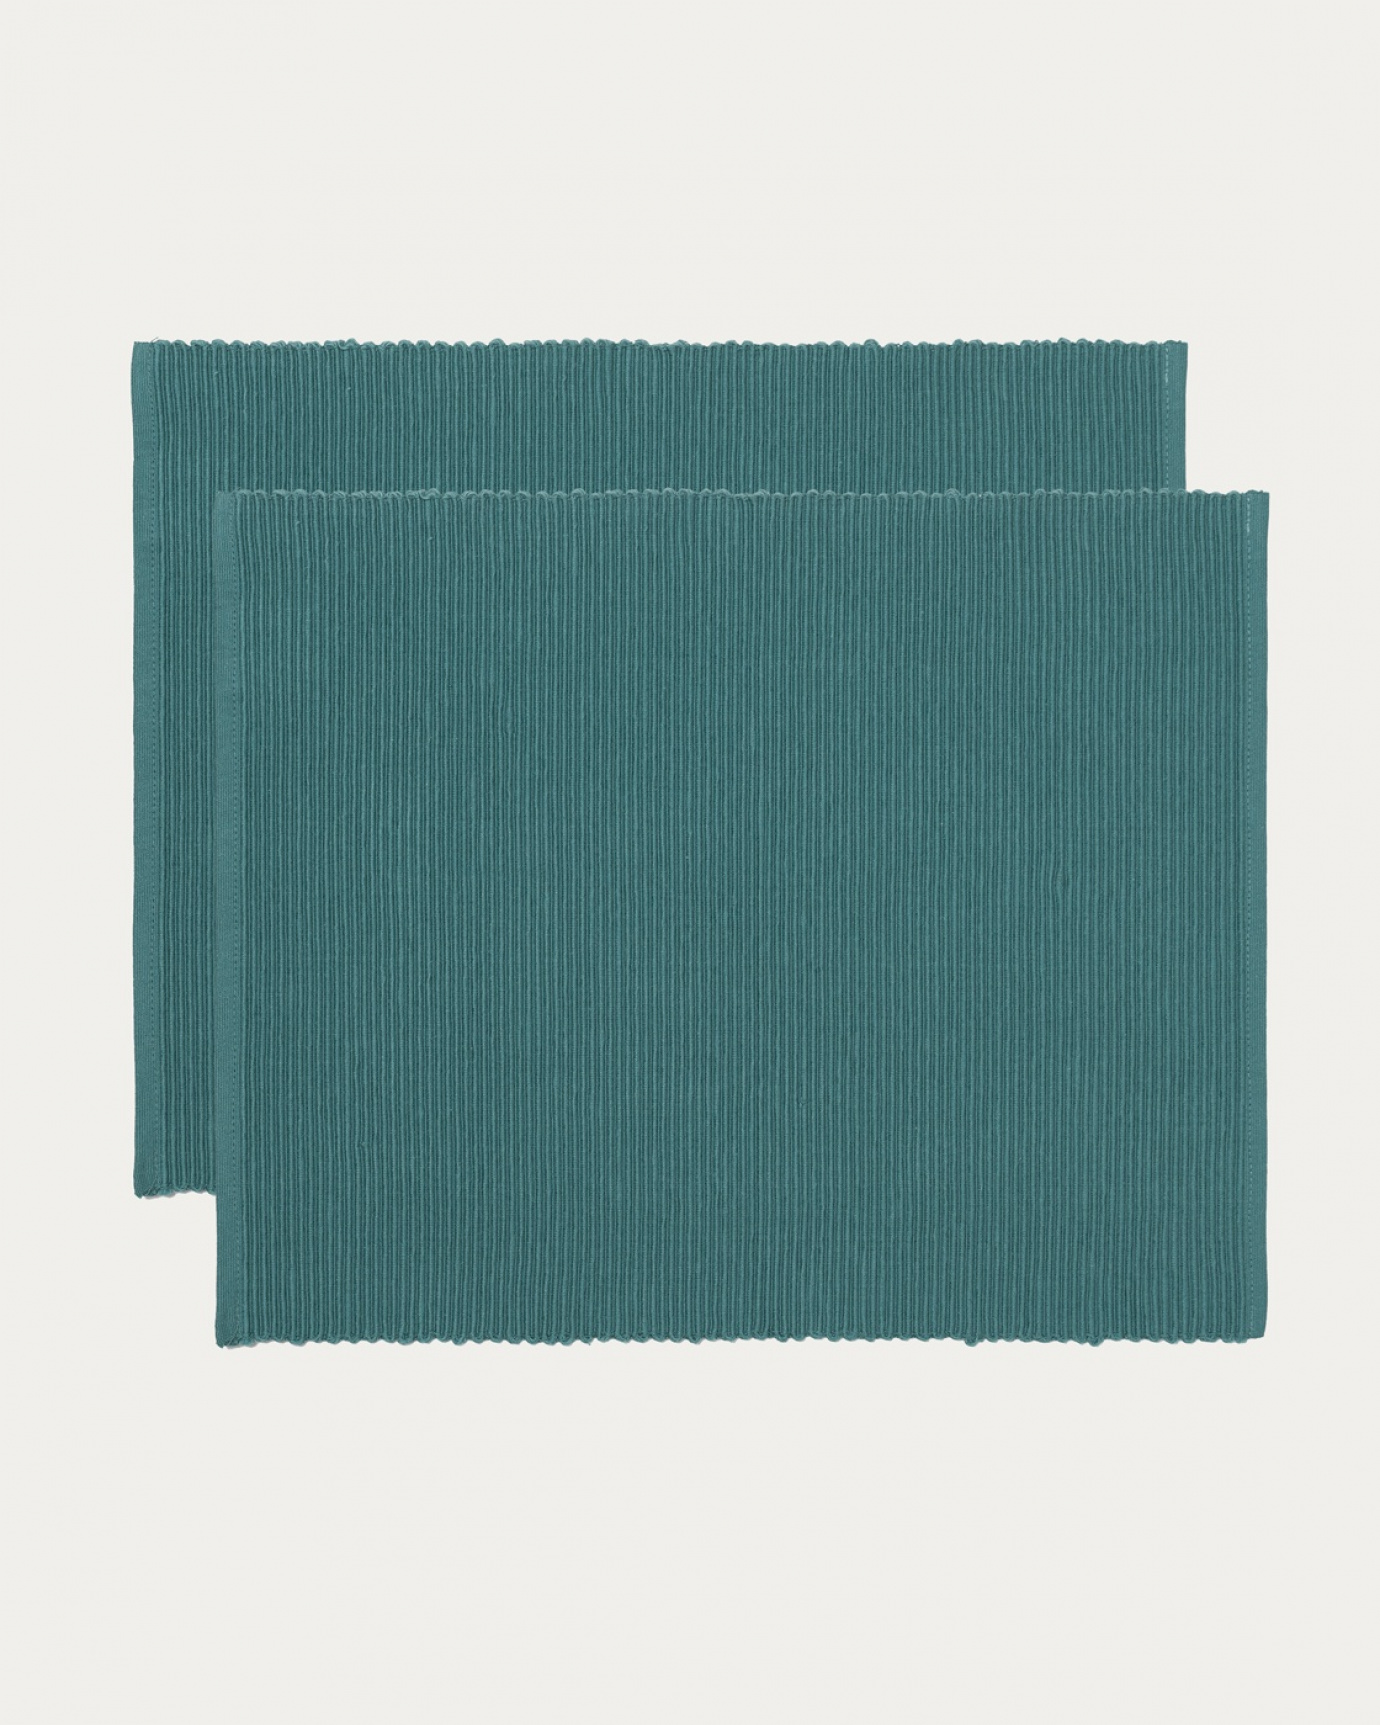 Produktbild dunkles grautürkis UNI Tischset aus weicher Baumwolle in Rippenqualität von LINUM DESIGN. Größe 35x46 cm und in 2er-Pack verkauft.